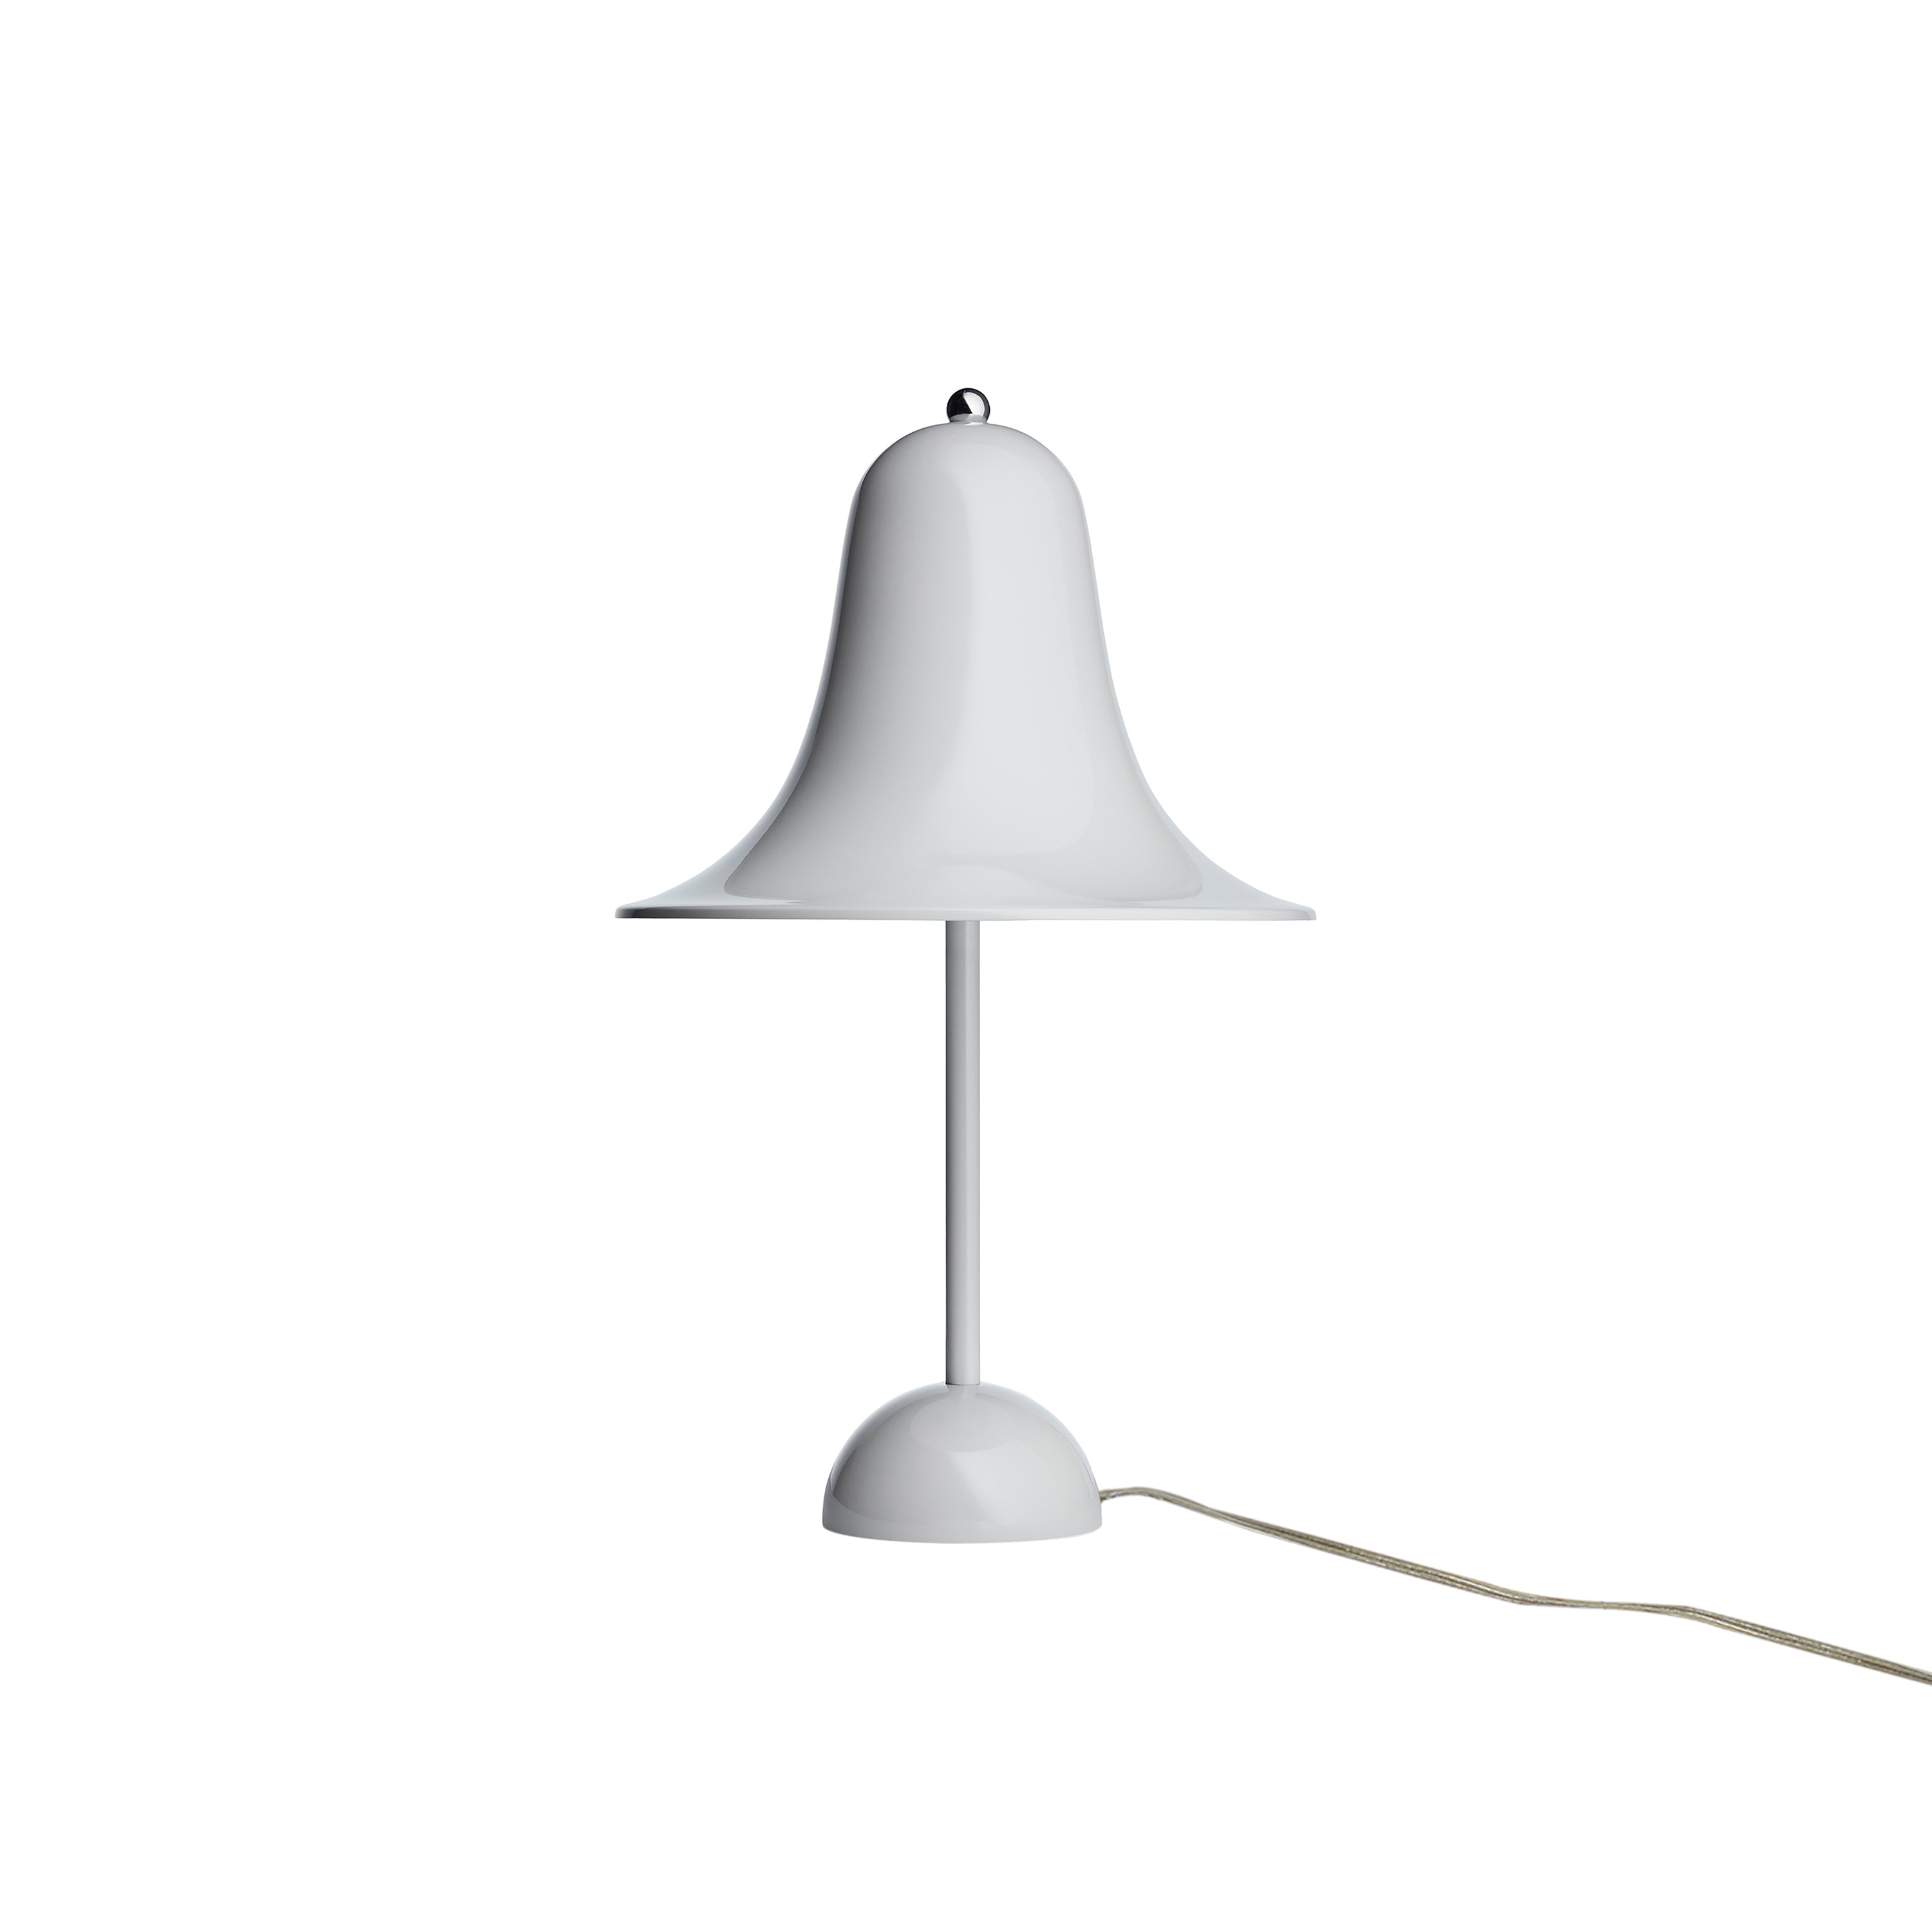 Pantop Table Lamp: Mint Grey